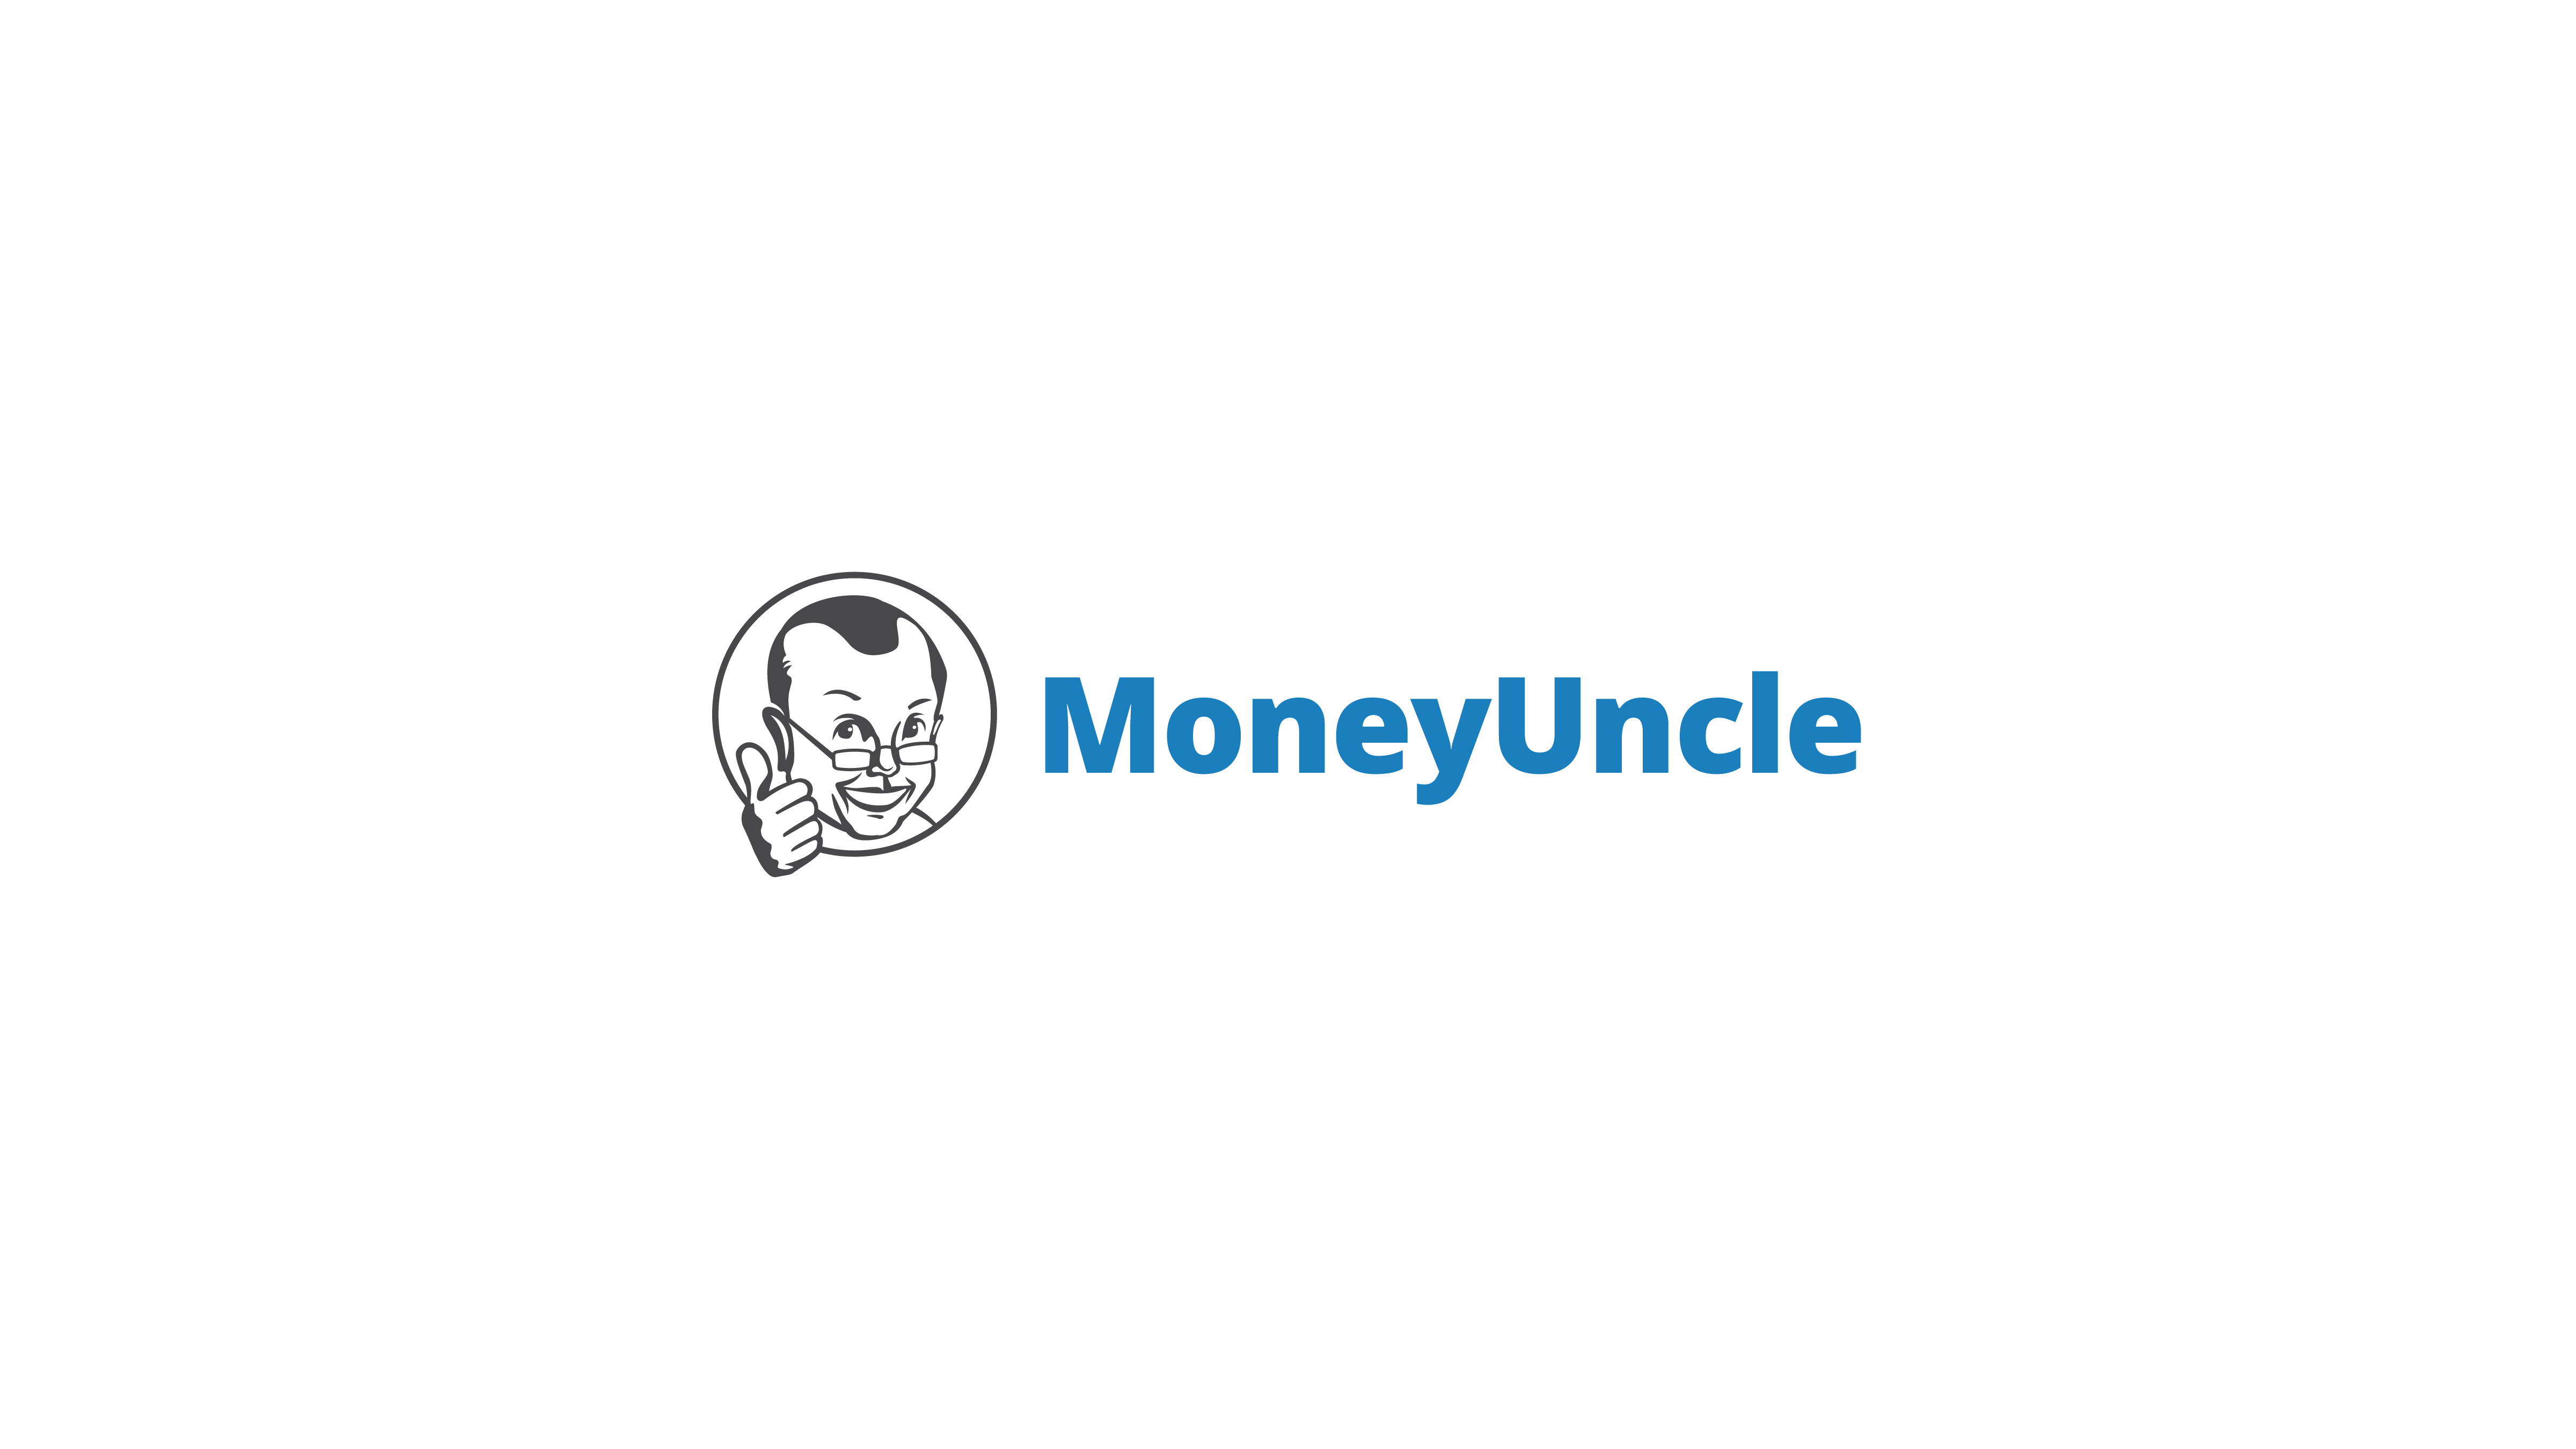 MoneyUncle Final Logo PNG